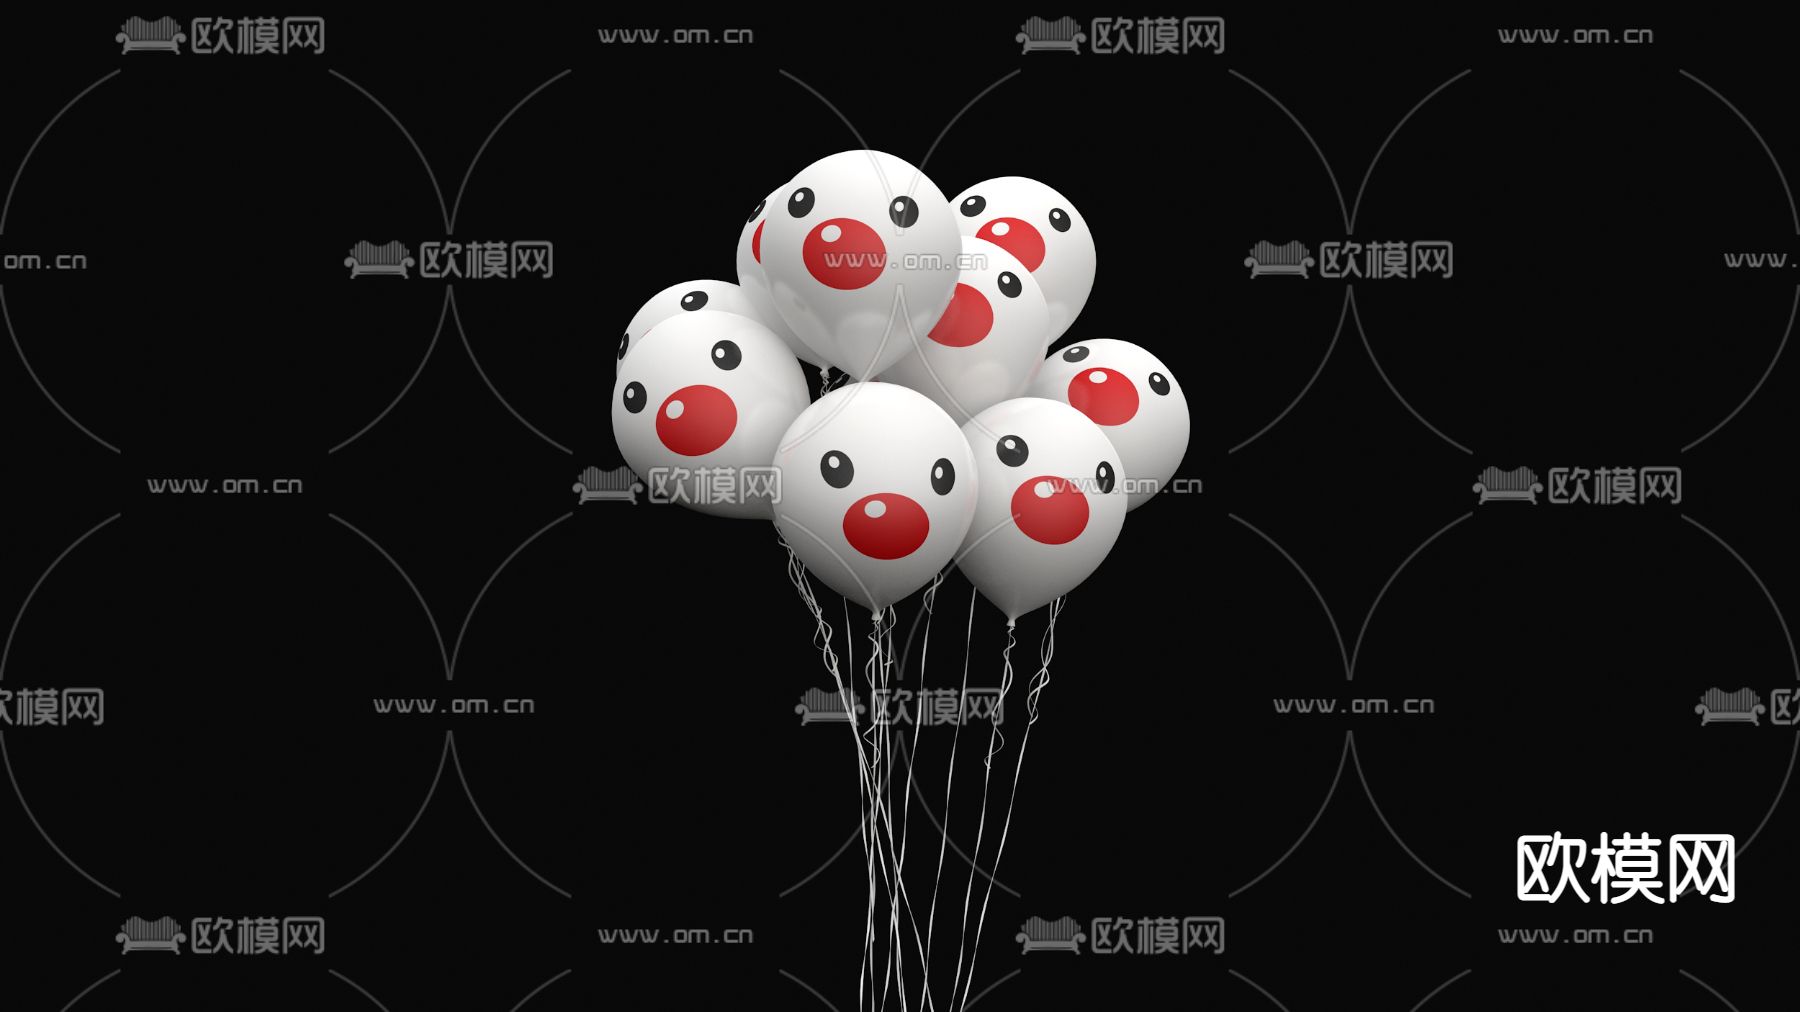 五颜六色气球的小丑 库存照片. 图片 包括有 字符, 服装, 愚蠢, 纵向, 乐趣, 性能, 幽默, 演艺人员 - 19129518